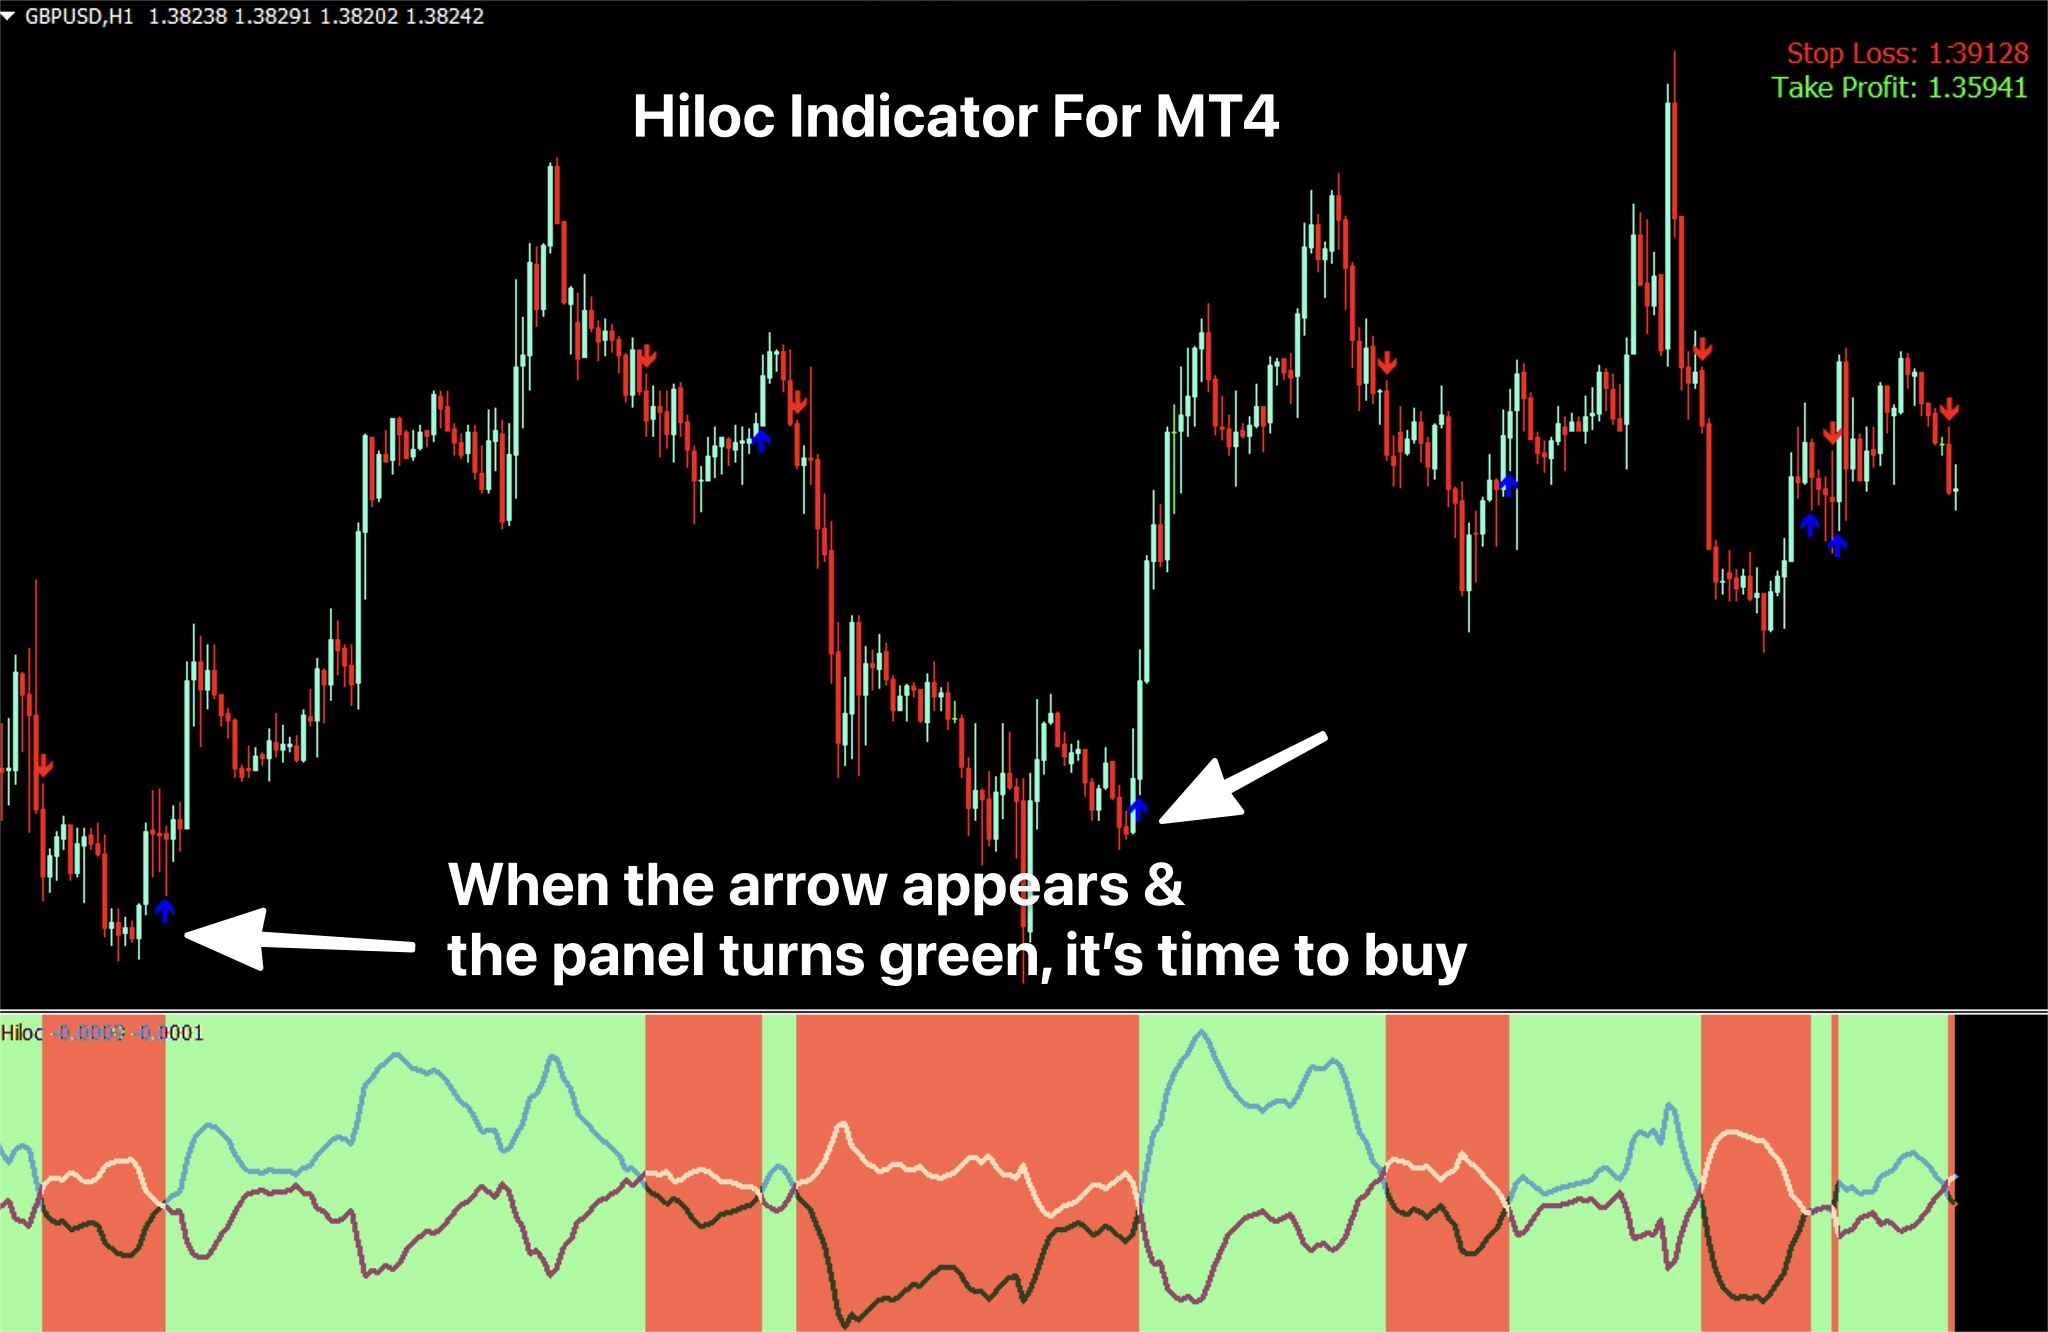 HiLoC 指标是一种非重绘指标，基于独特的算法移动平均公式，通过整合每根蜡烛的最高价、最低价和收盘价来确定趋势的开始。